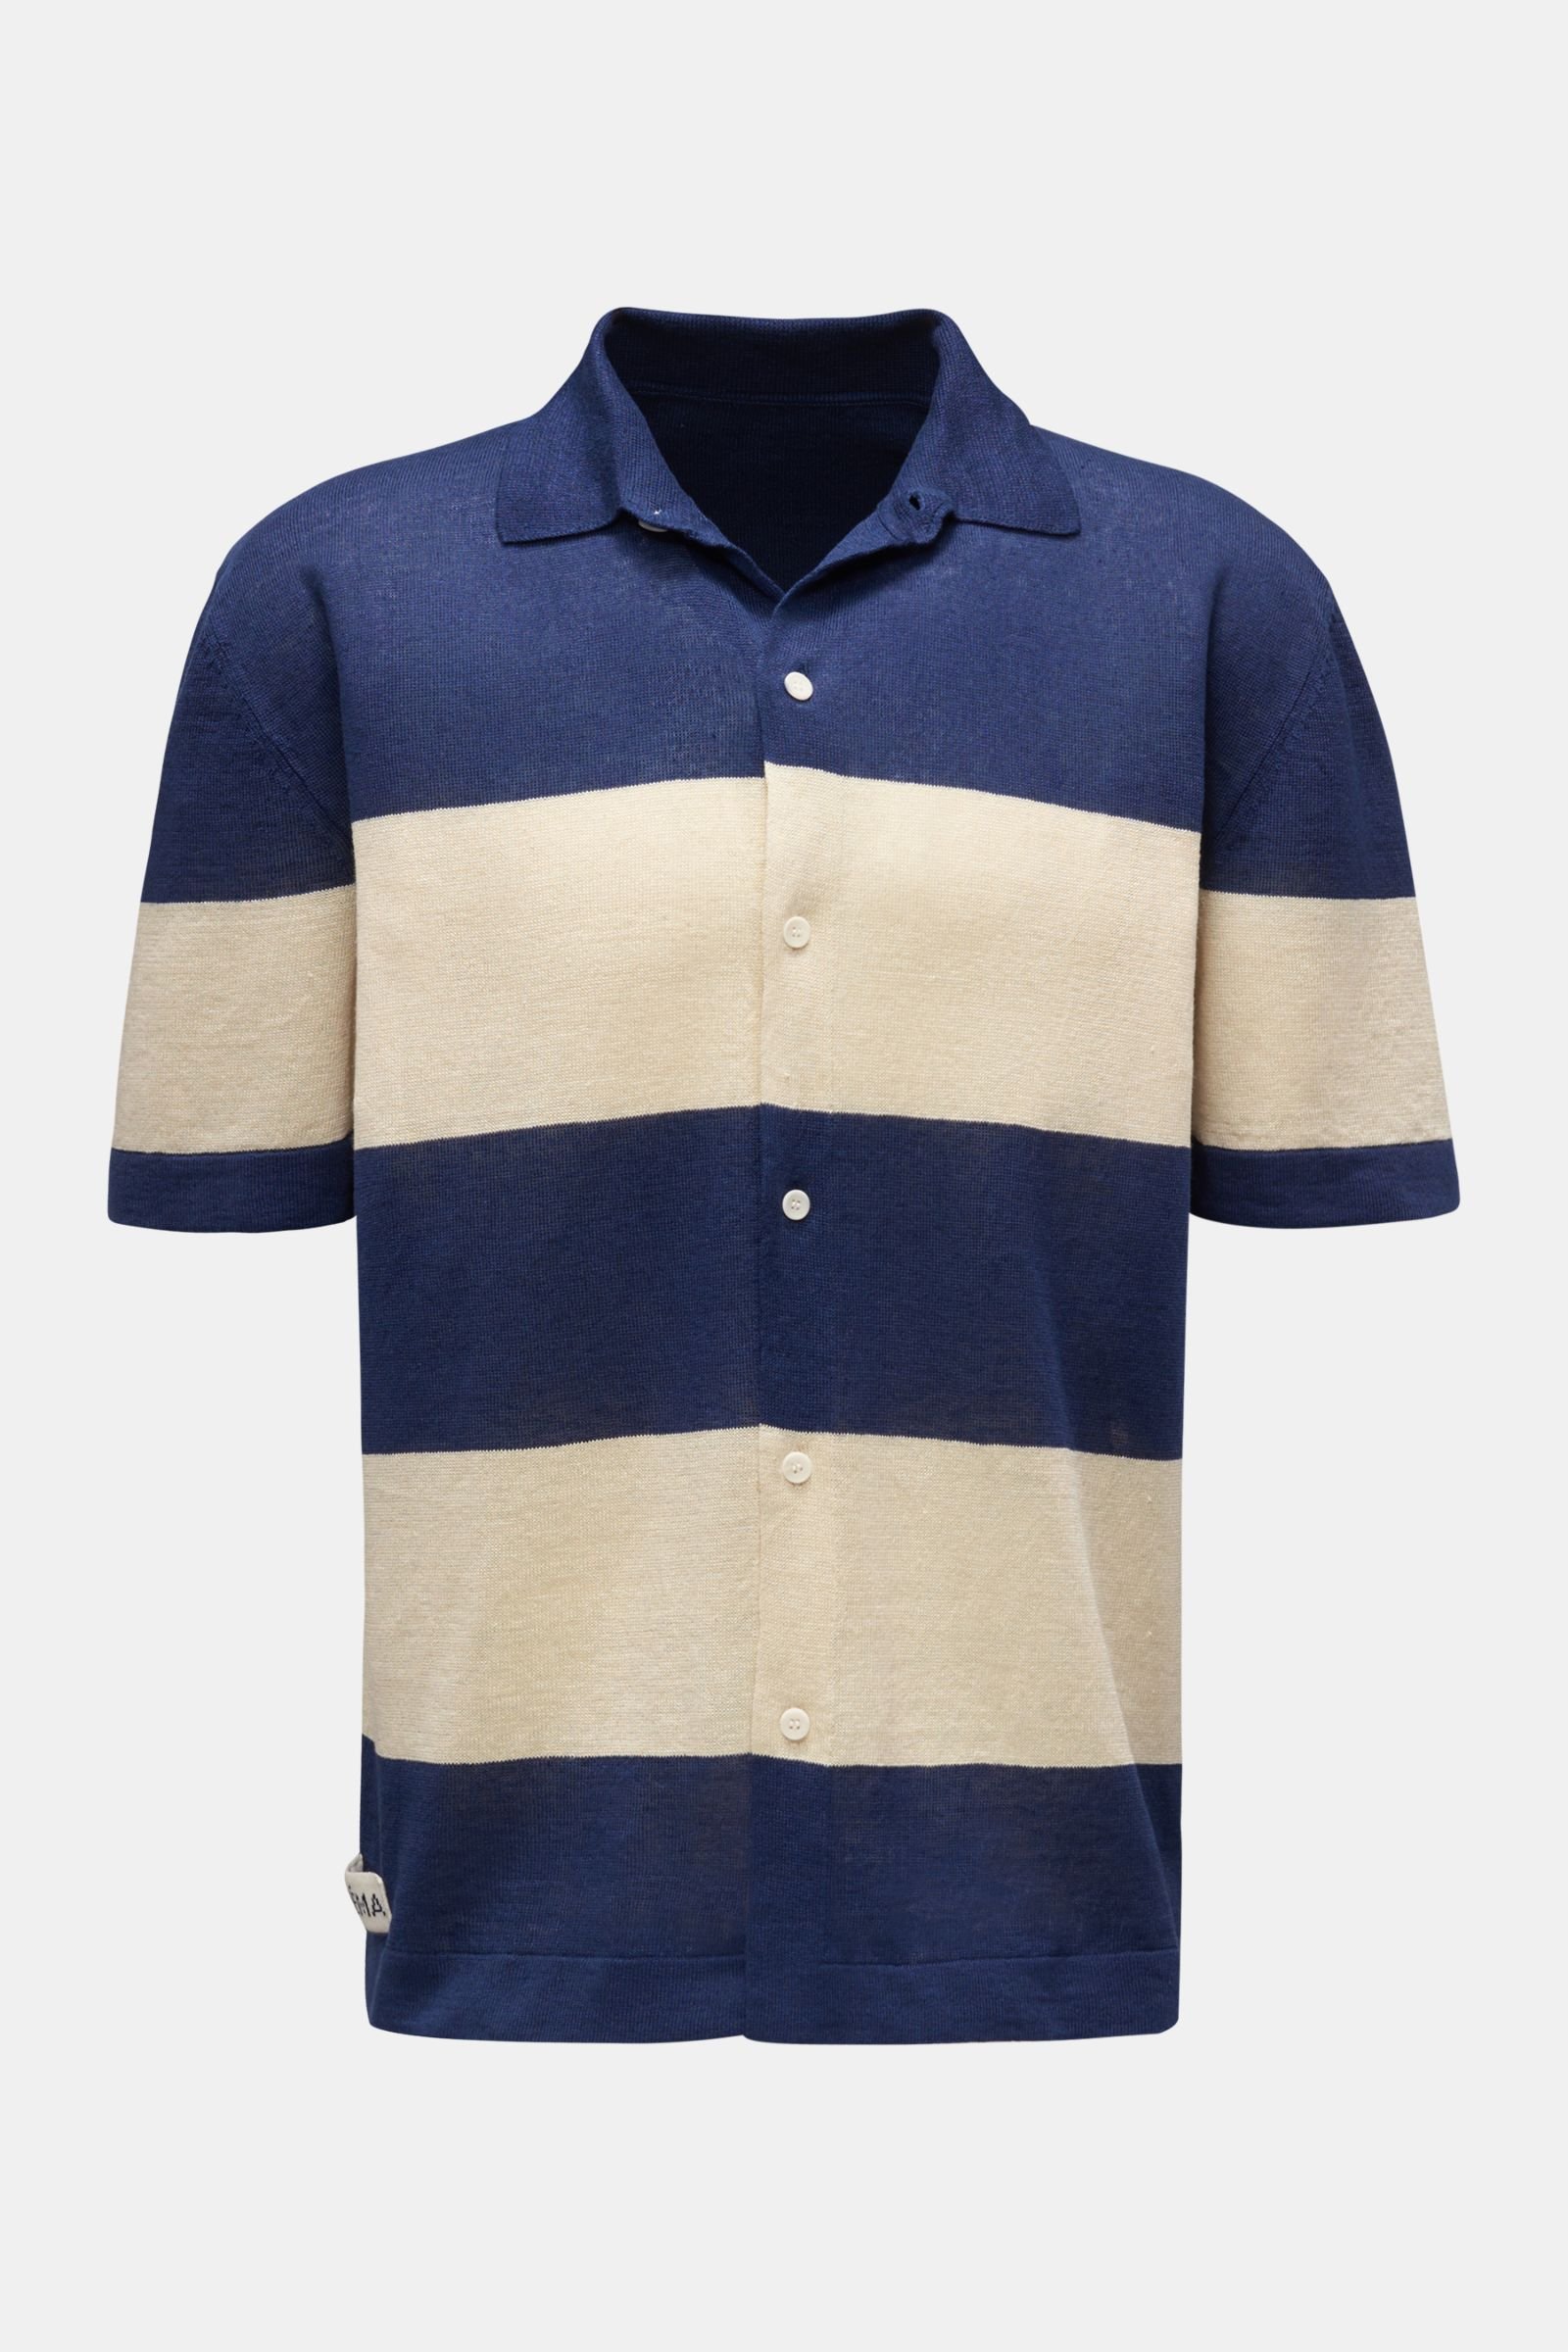 Linen short sleeve knit shirt narrow collar navy/beige striped